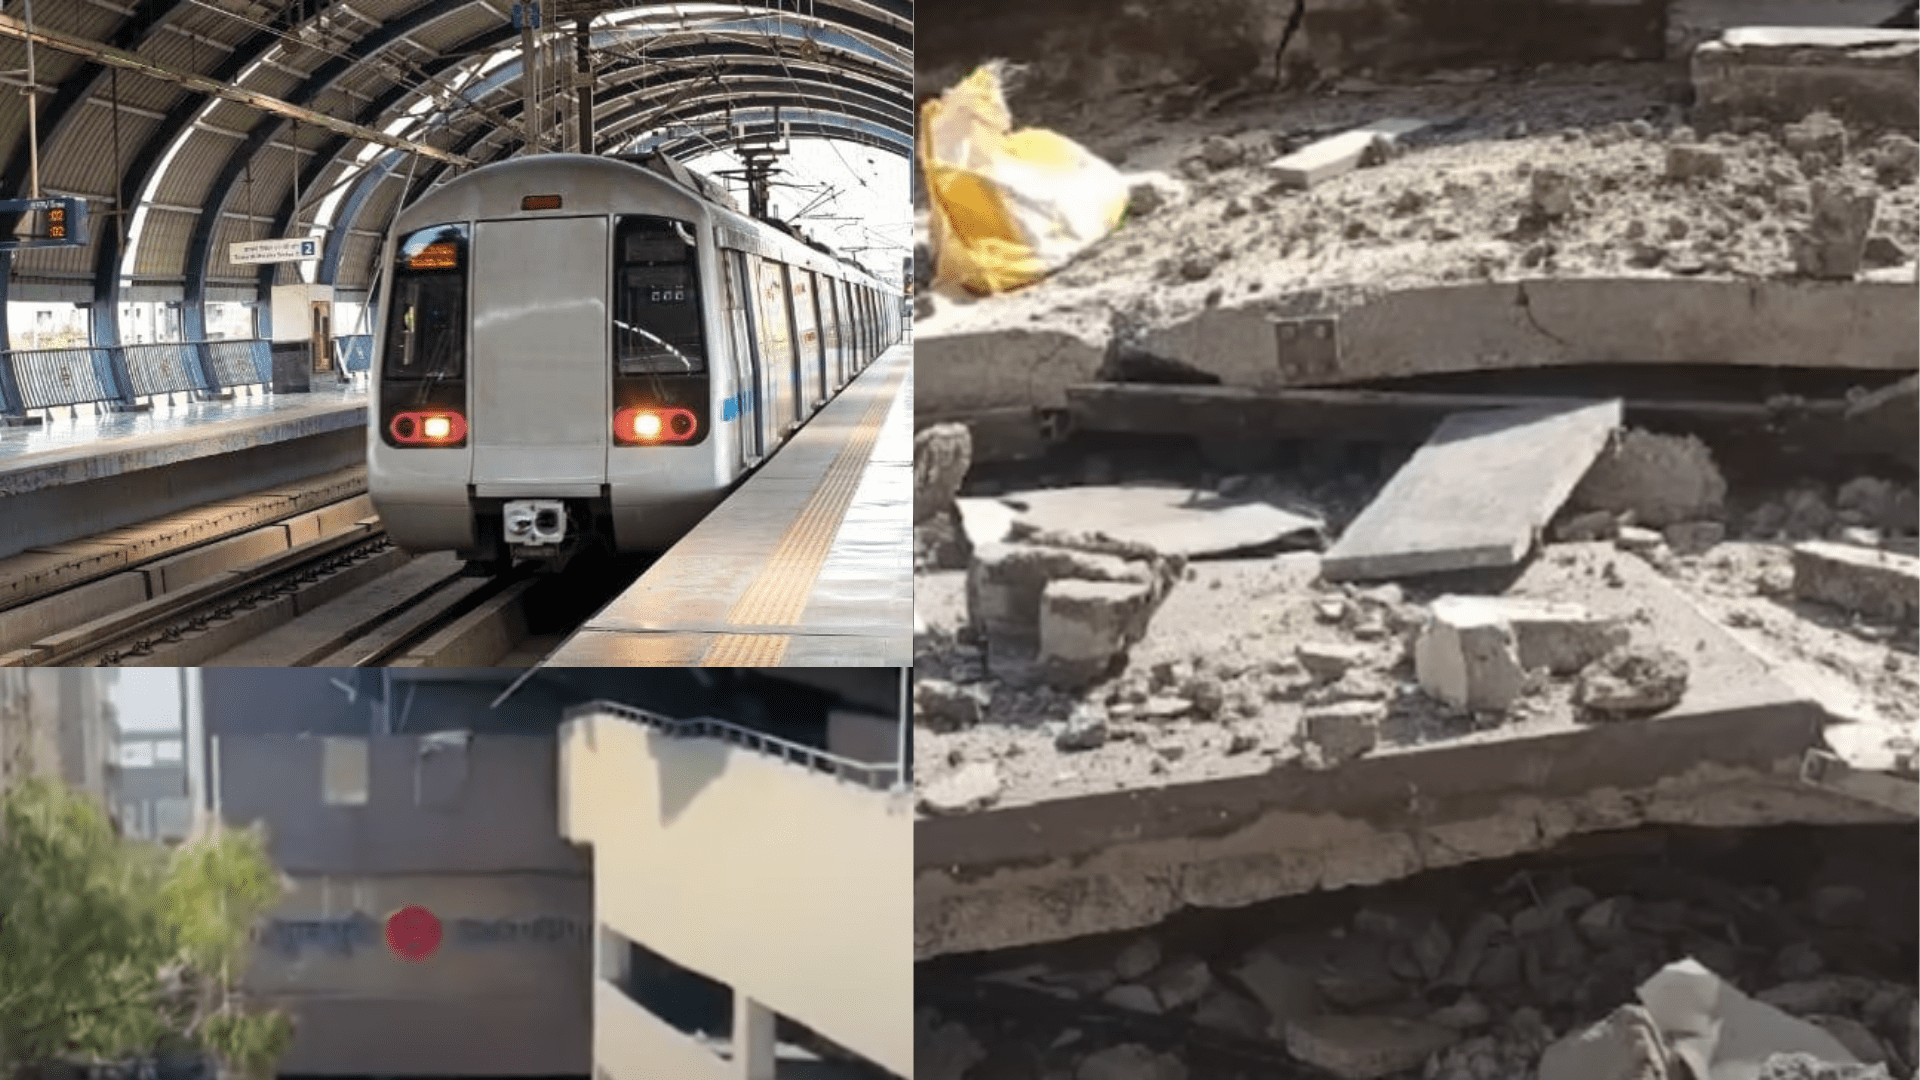 Delhi Metro hadsa दिल्ली मेट्रो हादसा: 25 लाख रुपये की क्षतिपूर्ति घायलों के परिजनों को, डीएमआरसी के कई कर्मचारियों को सस्पेंड